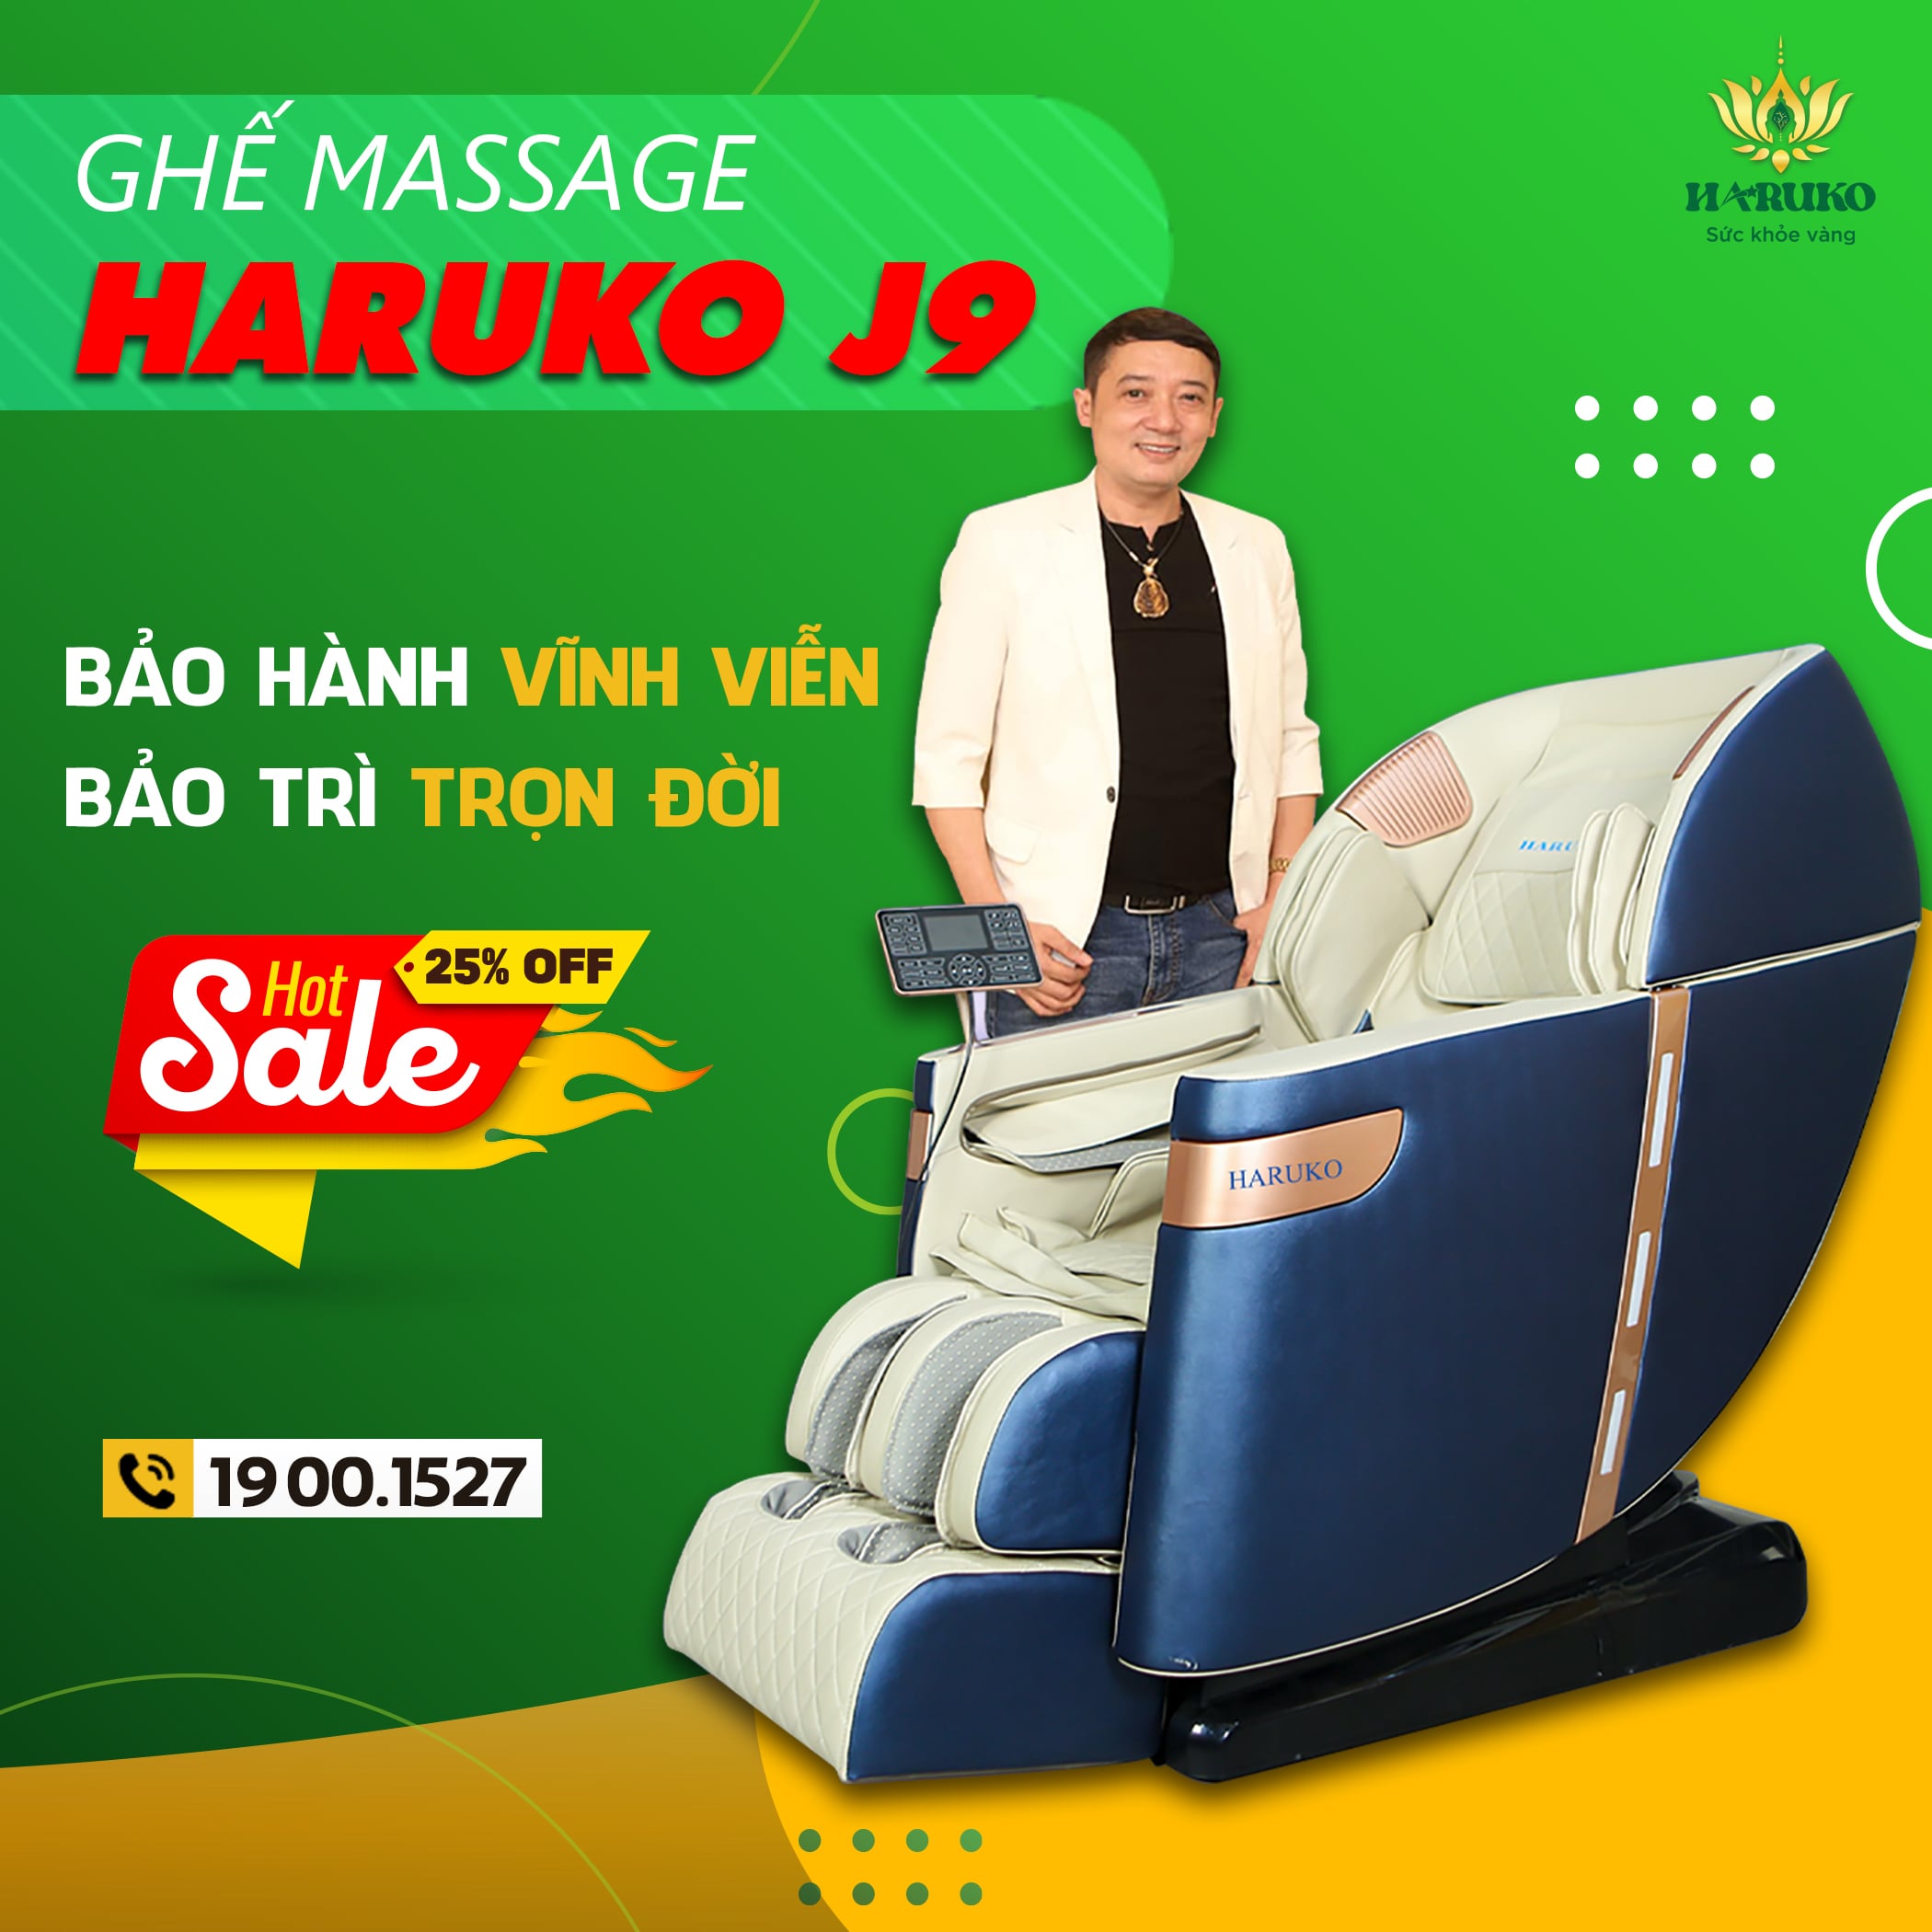 Ghế massage Haruko-J9 sở hữu thiết kế độc đáo,hiện đại và những tính năng ưu việt trong phân khúc sản phẩm cao cấp